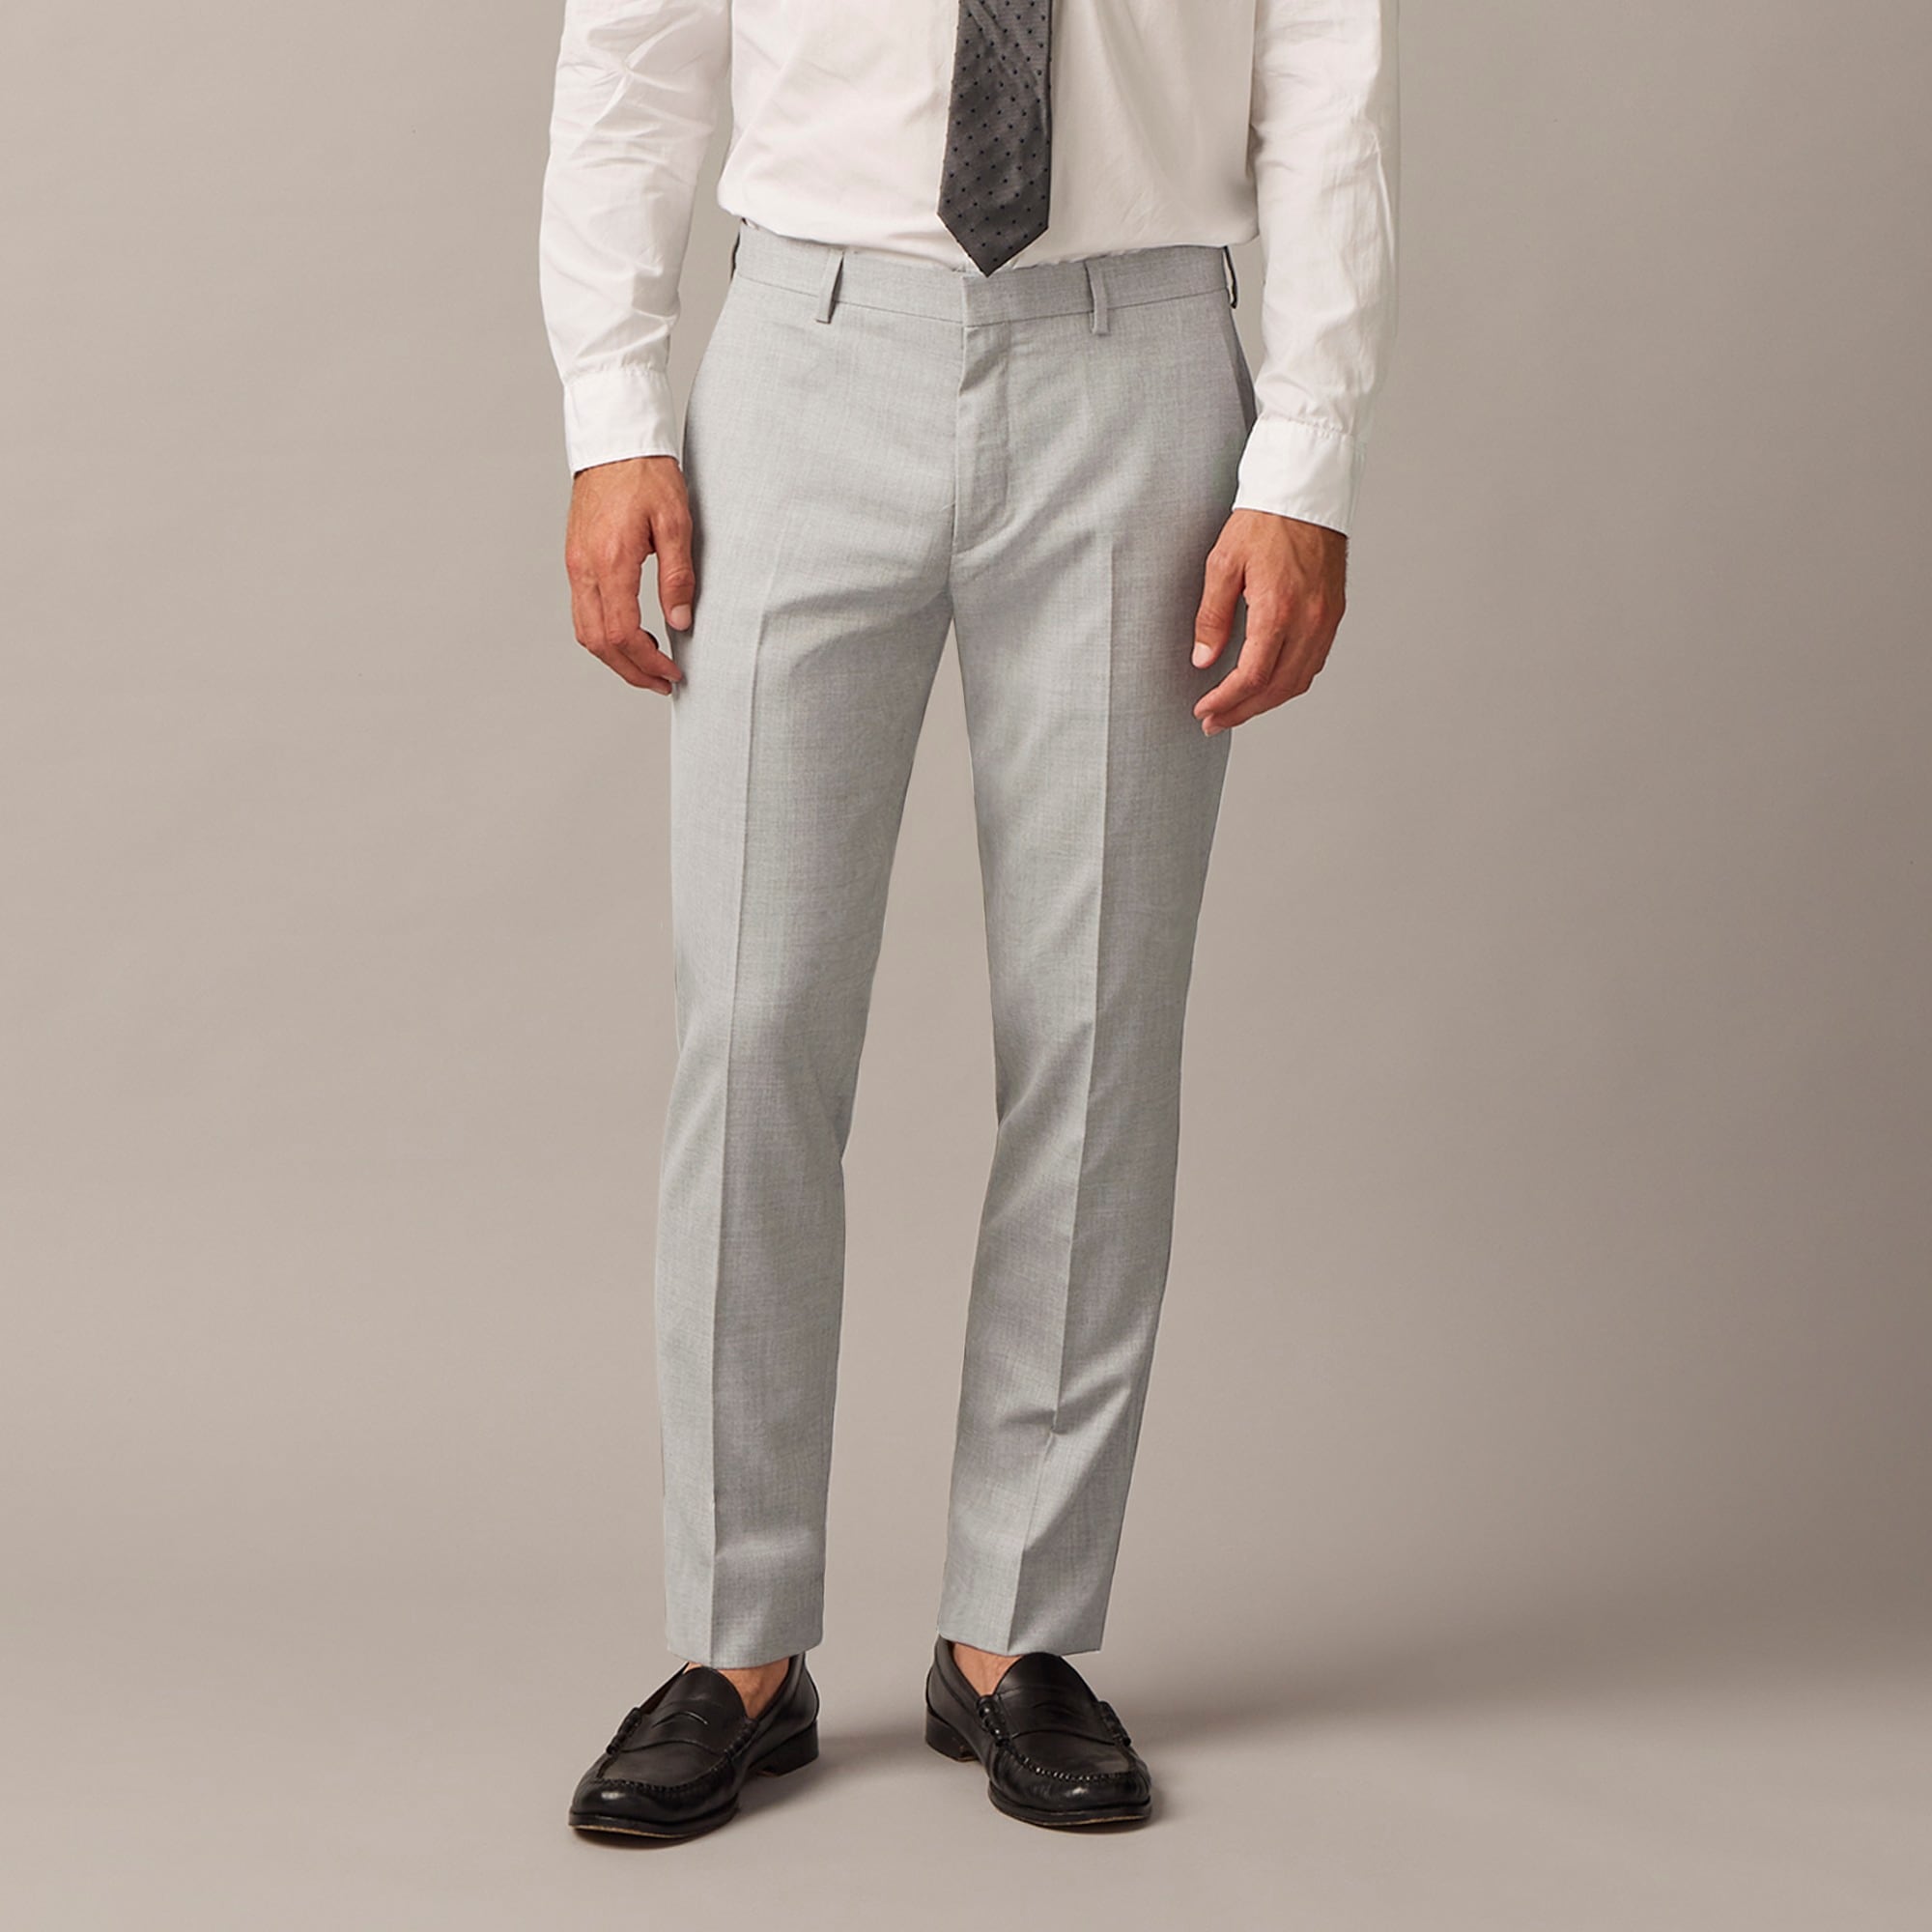 Jcrew Ludlow Slim-fit suit pant in Italian wool